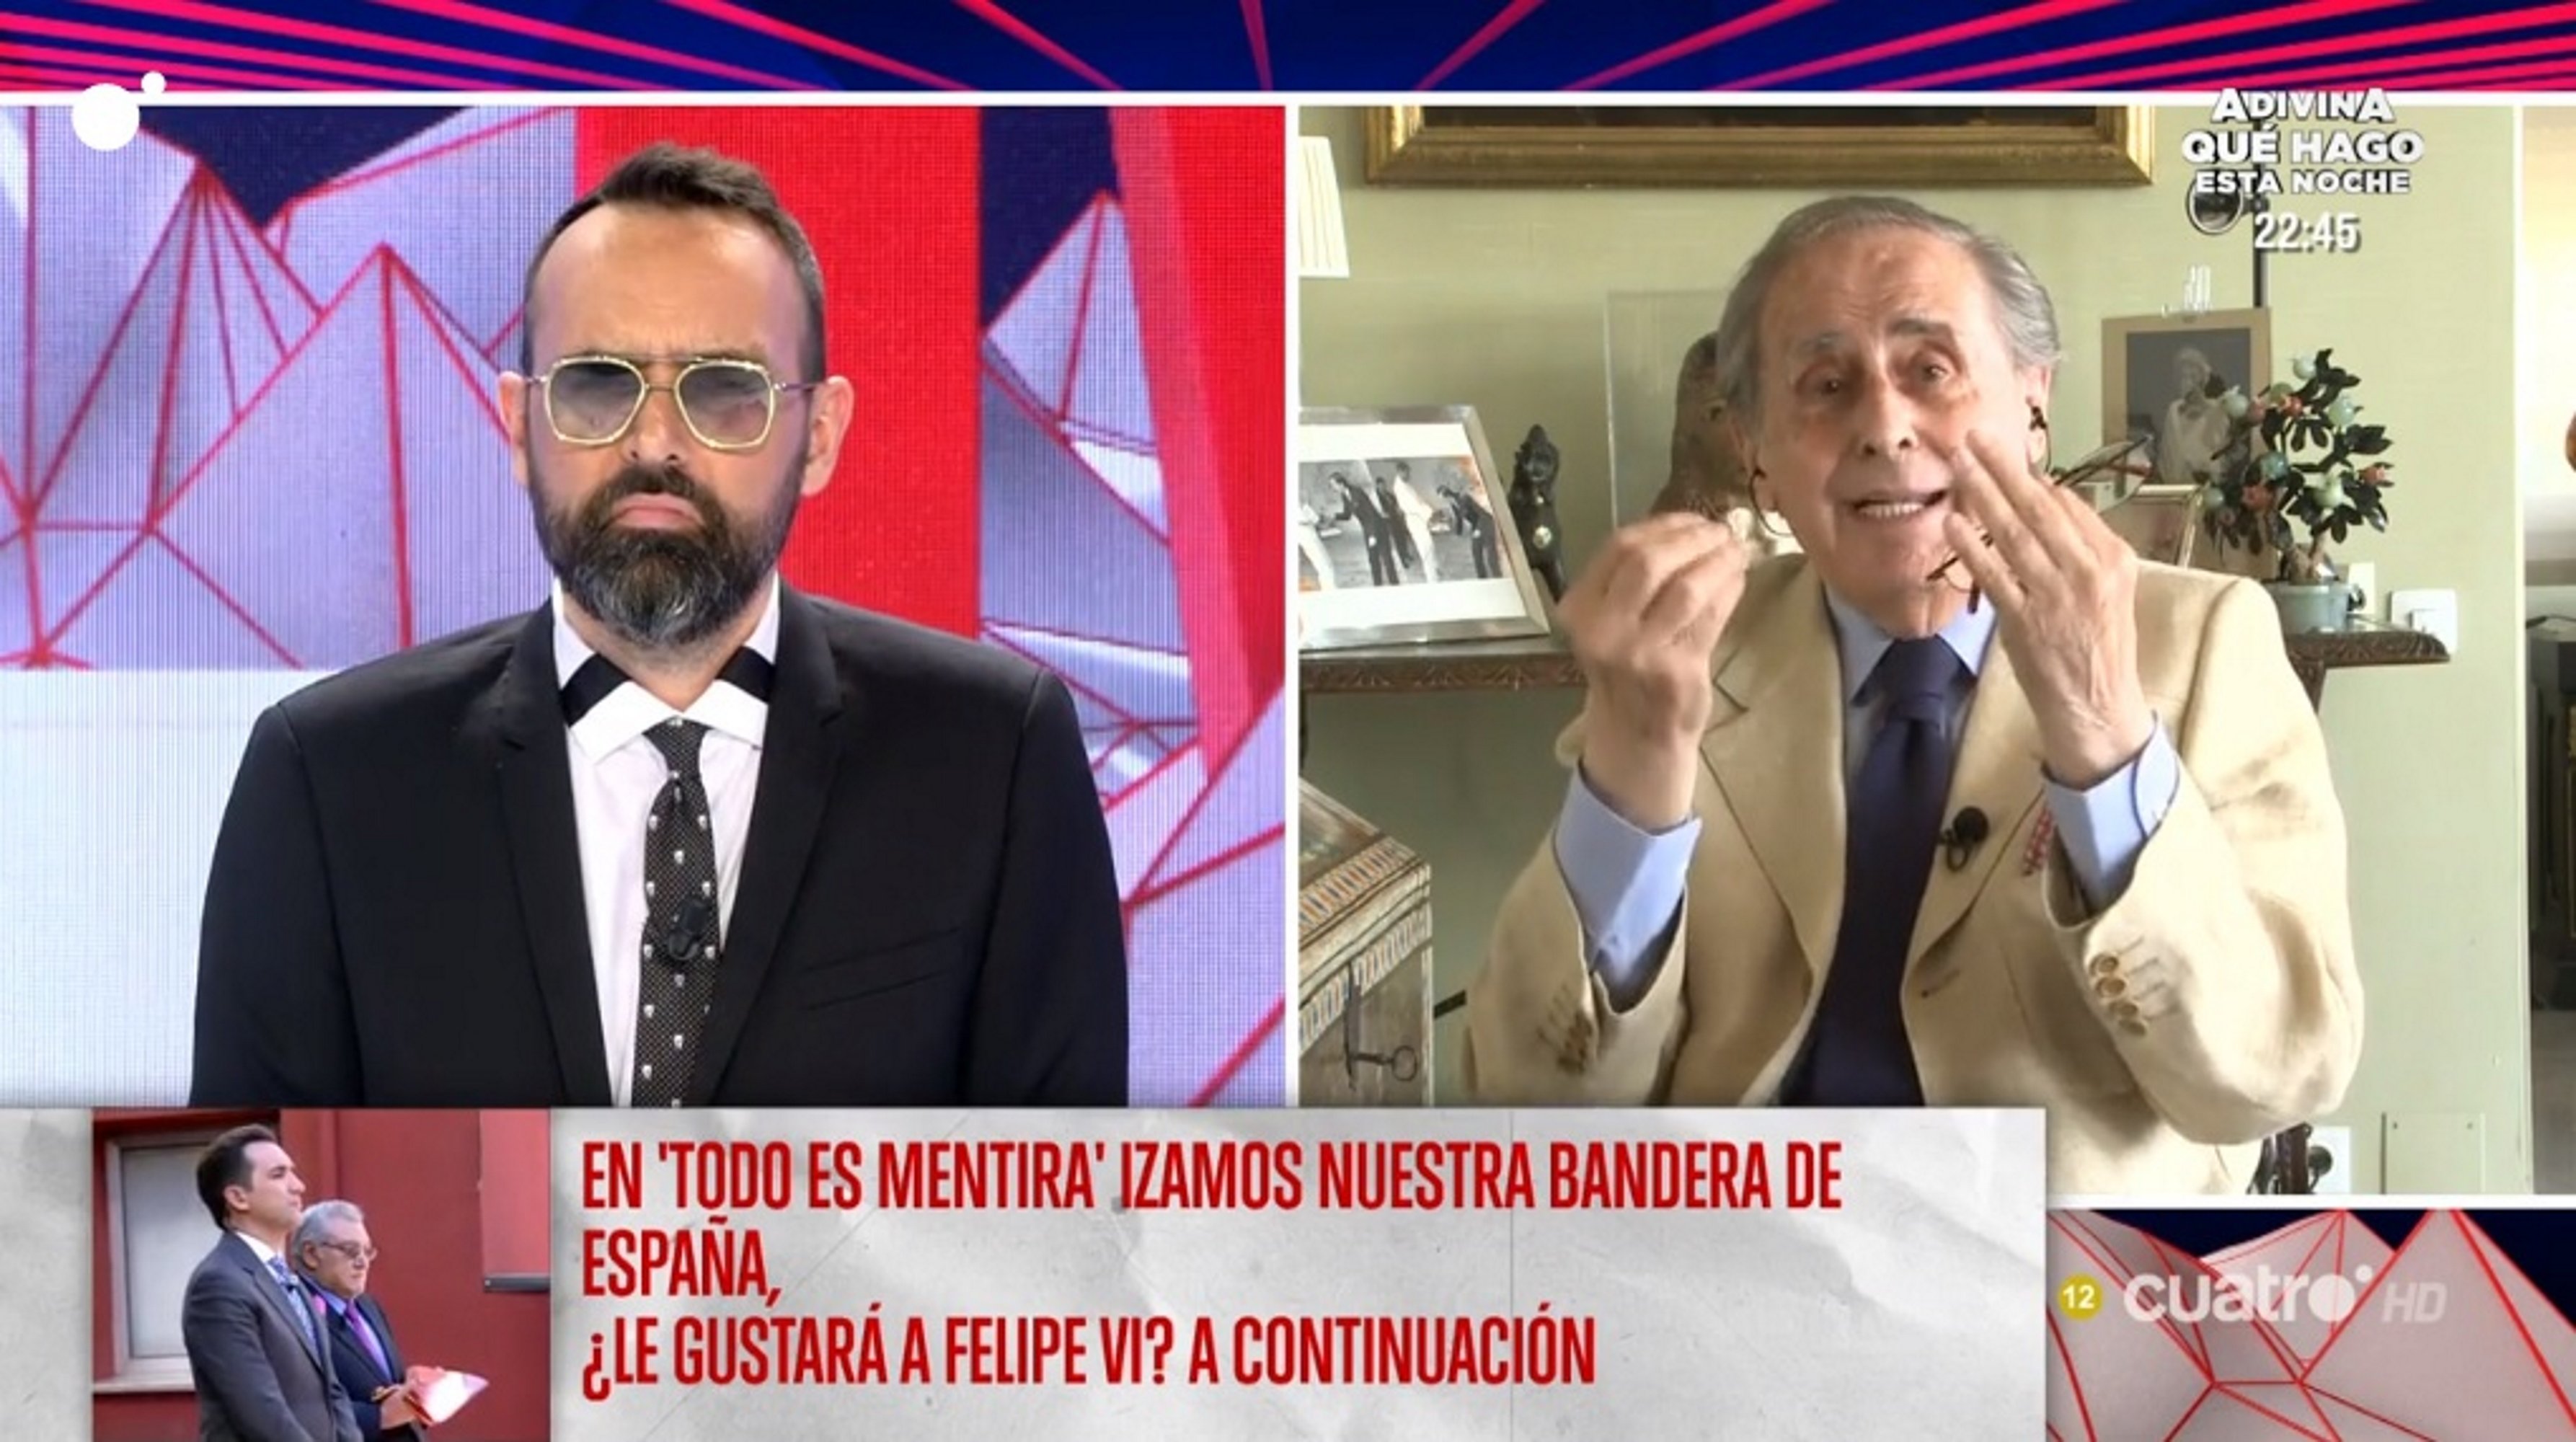 Peñafiel en el programa de Risto: “Una mano negra ha apartado a Juan Carlos”